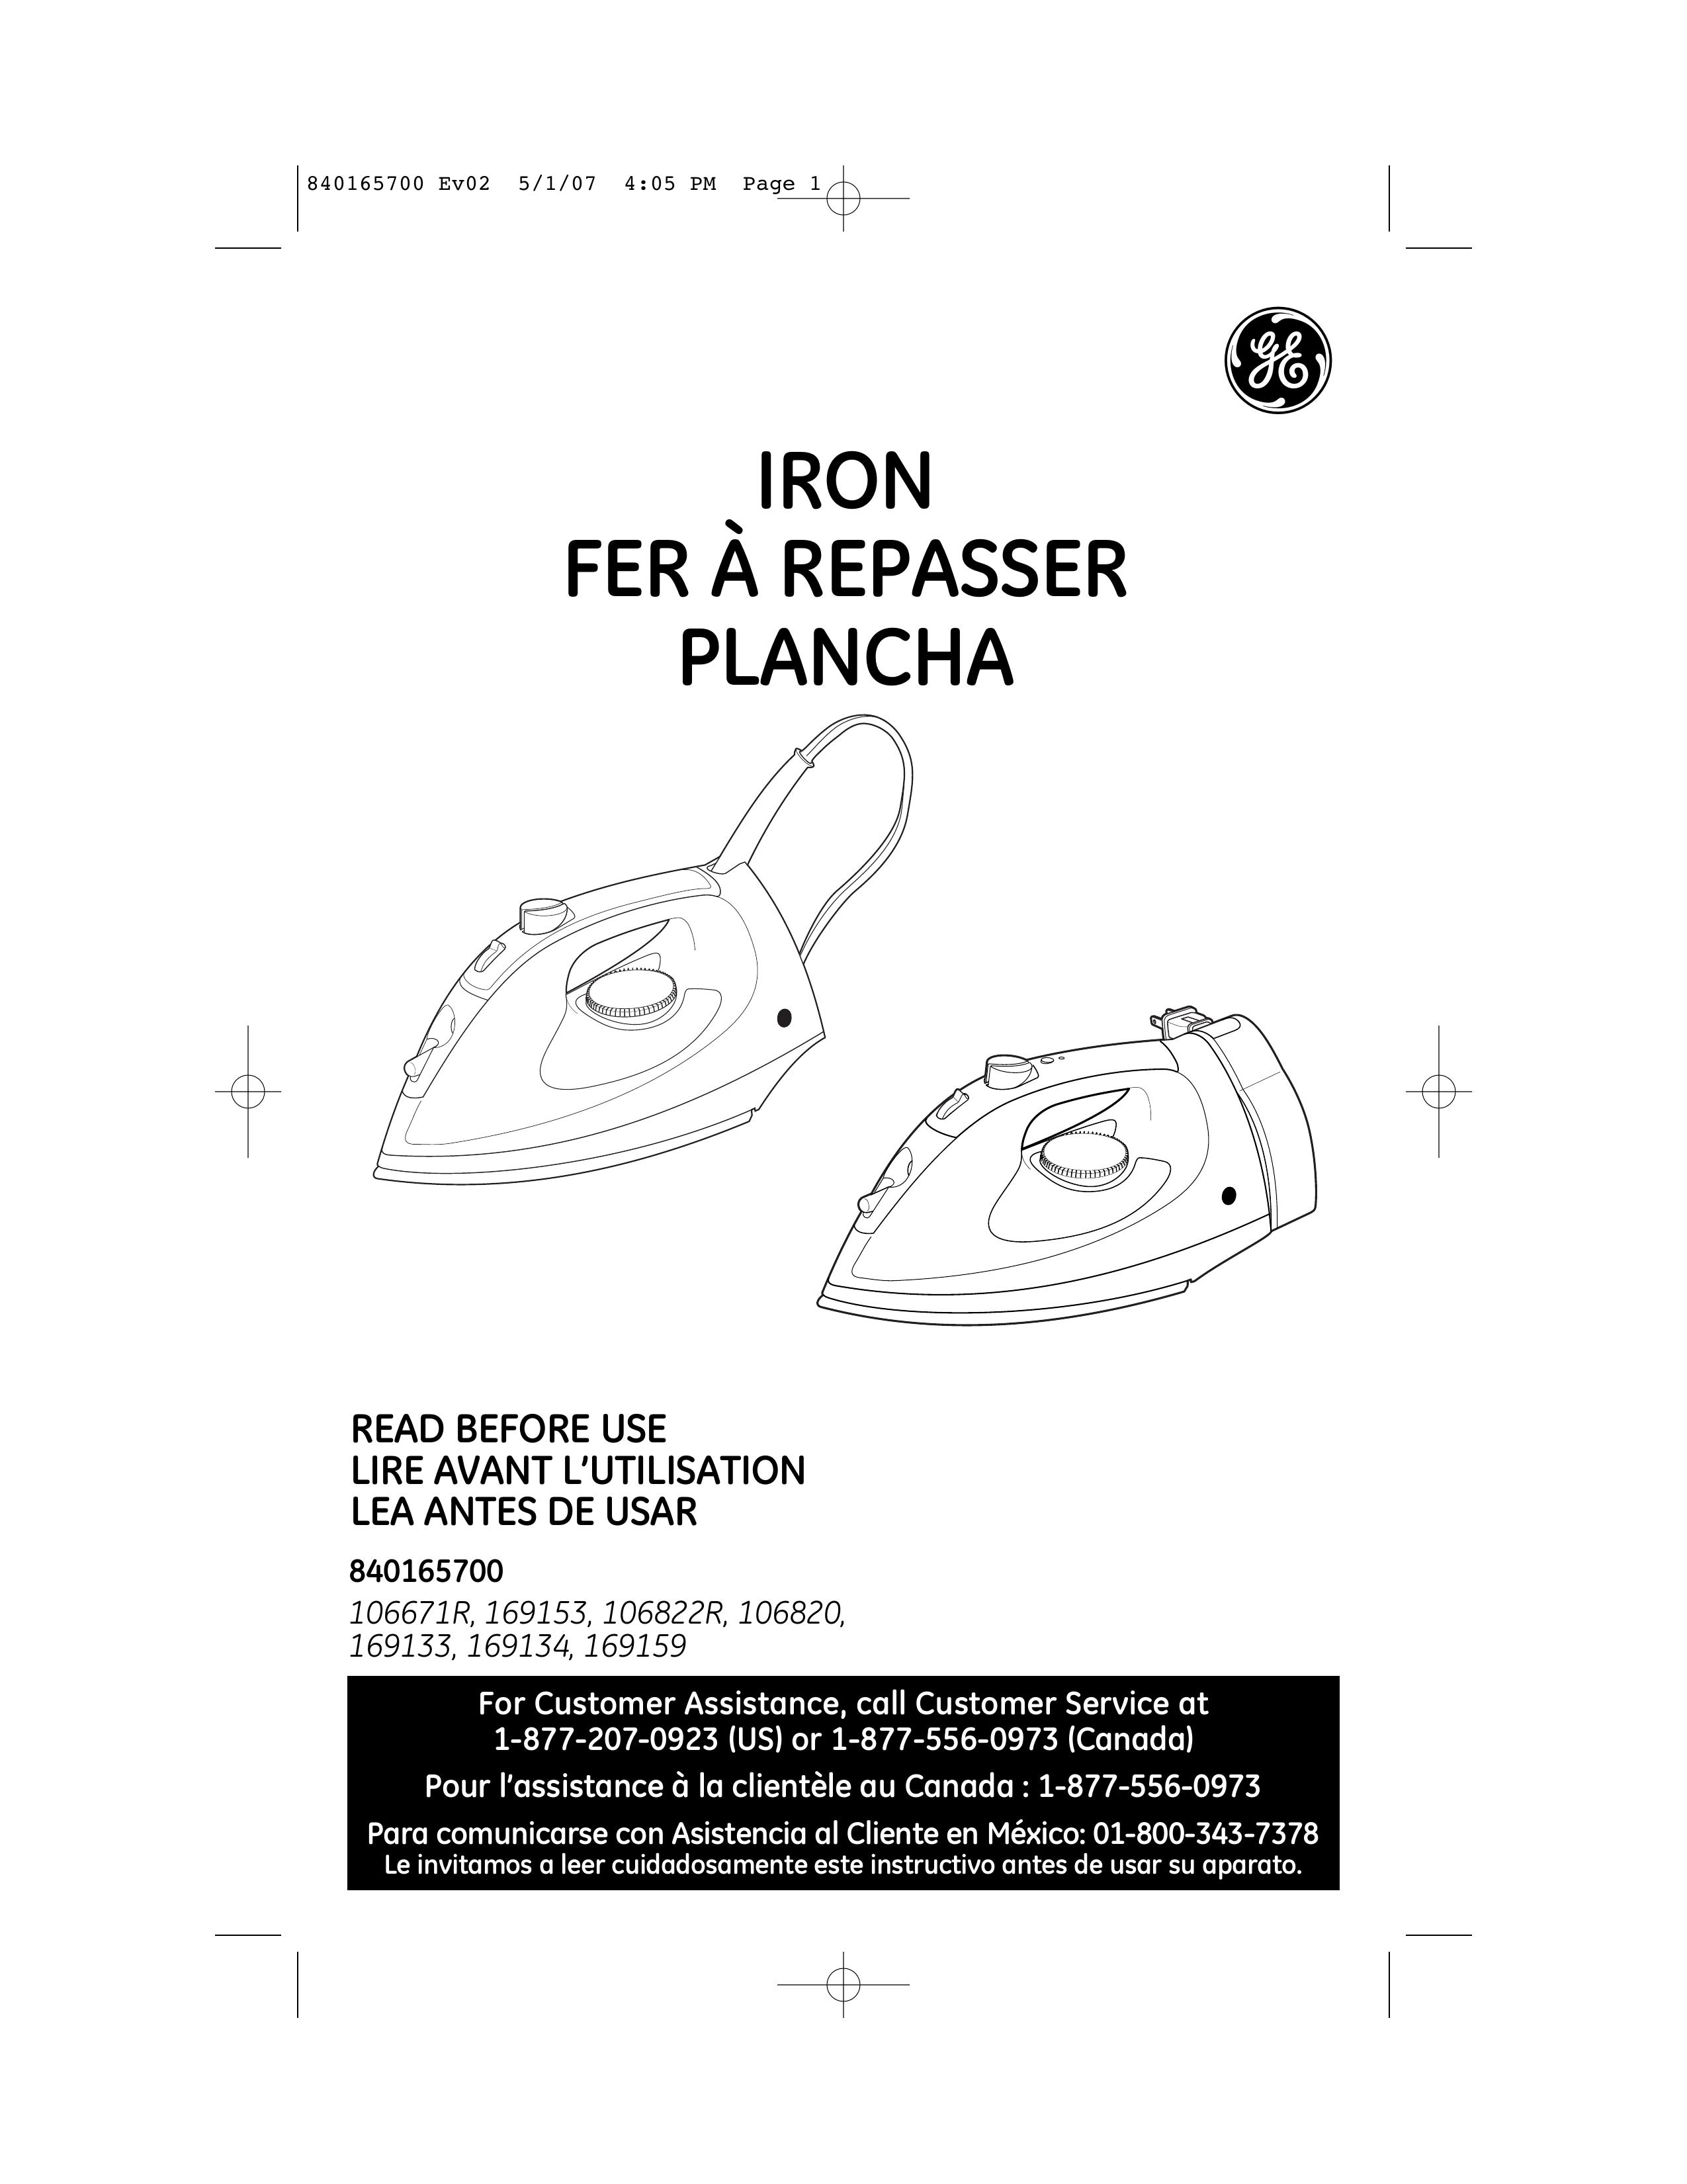 GE 169194 Iron User Manual